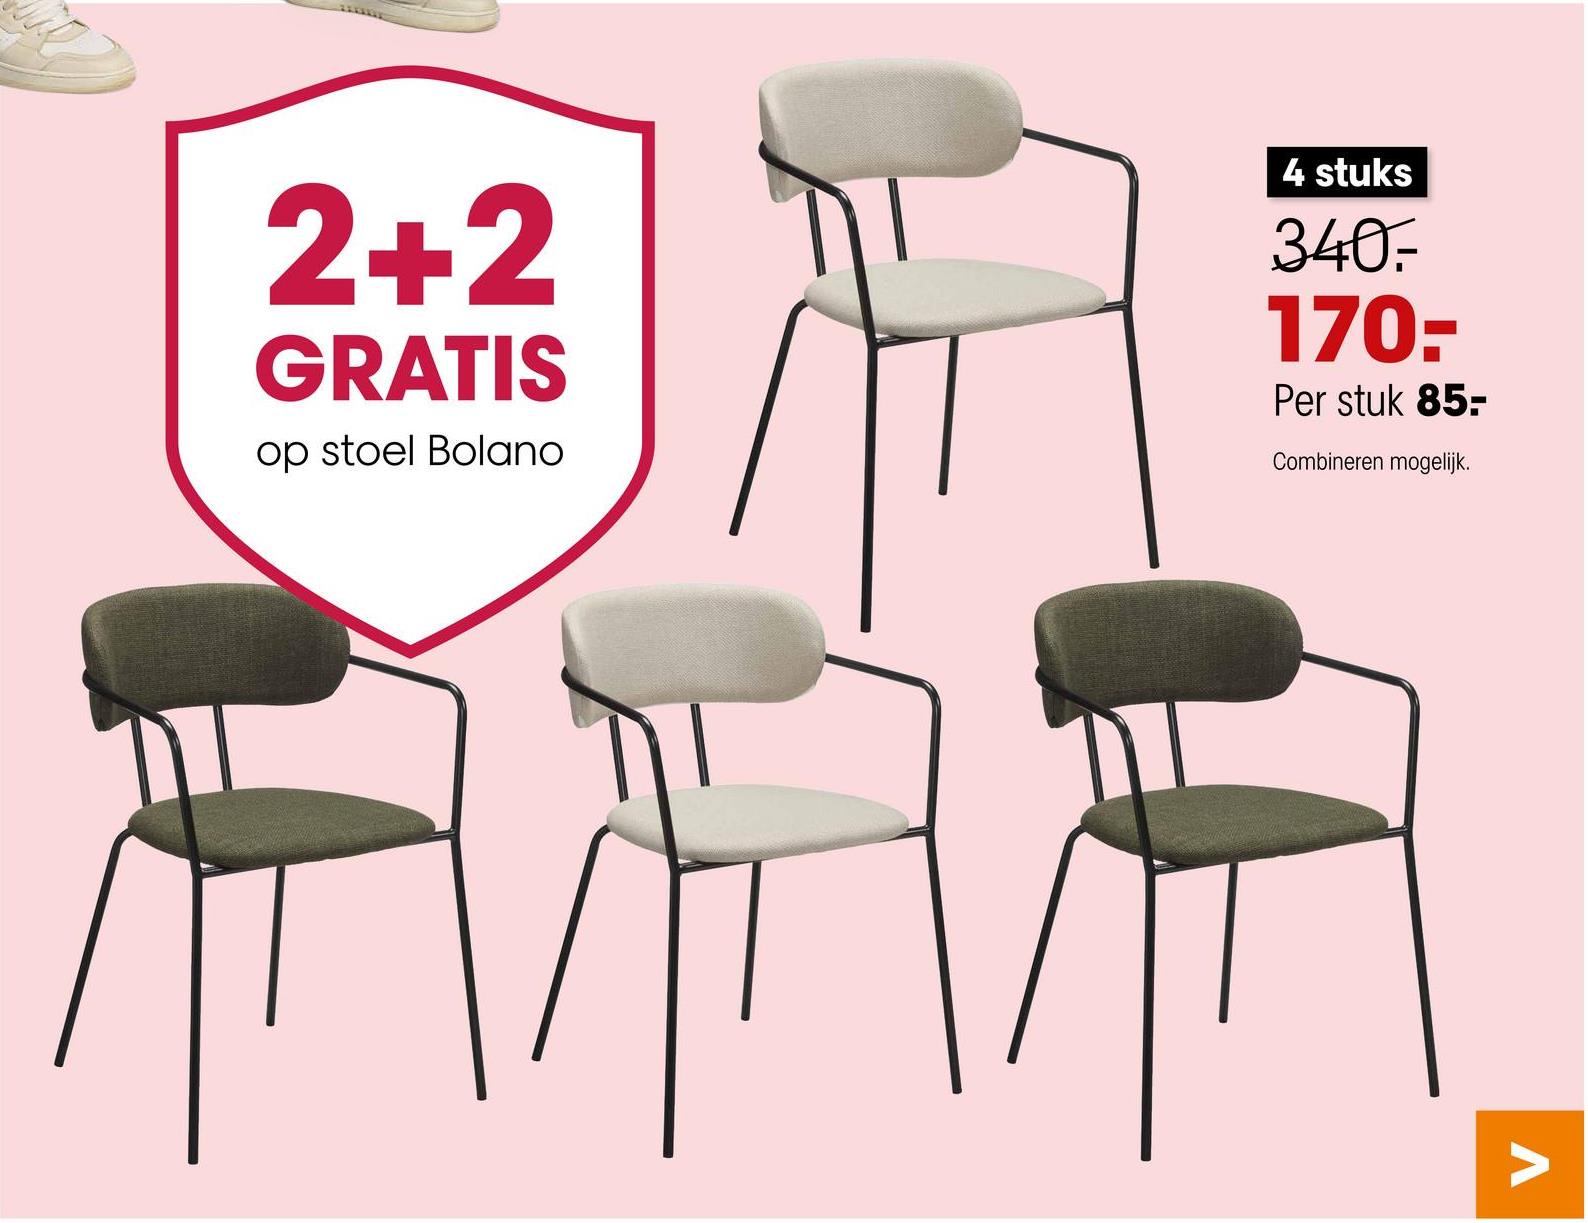 2+2
GRATIS
op stoel Bolano
4 stuks
340.
170--
Per stuk 85-
Combineren mogelijk.
V